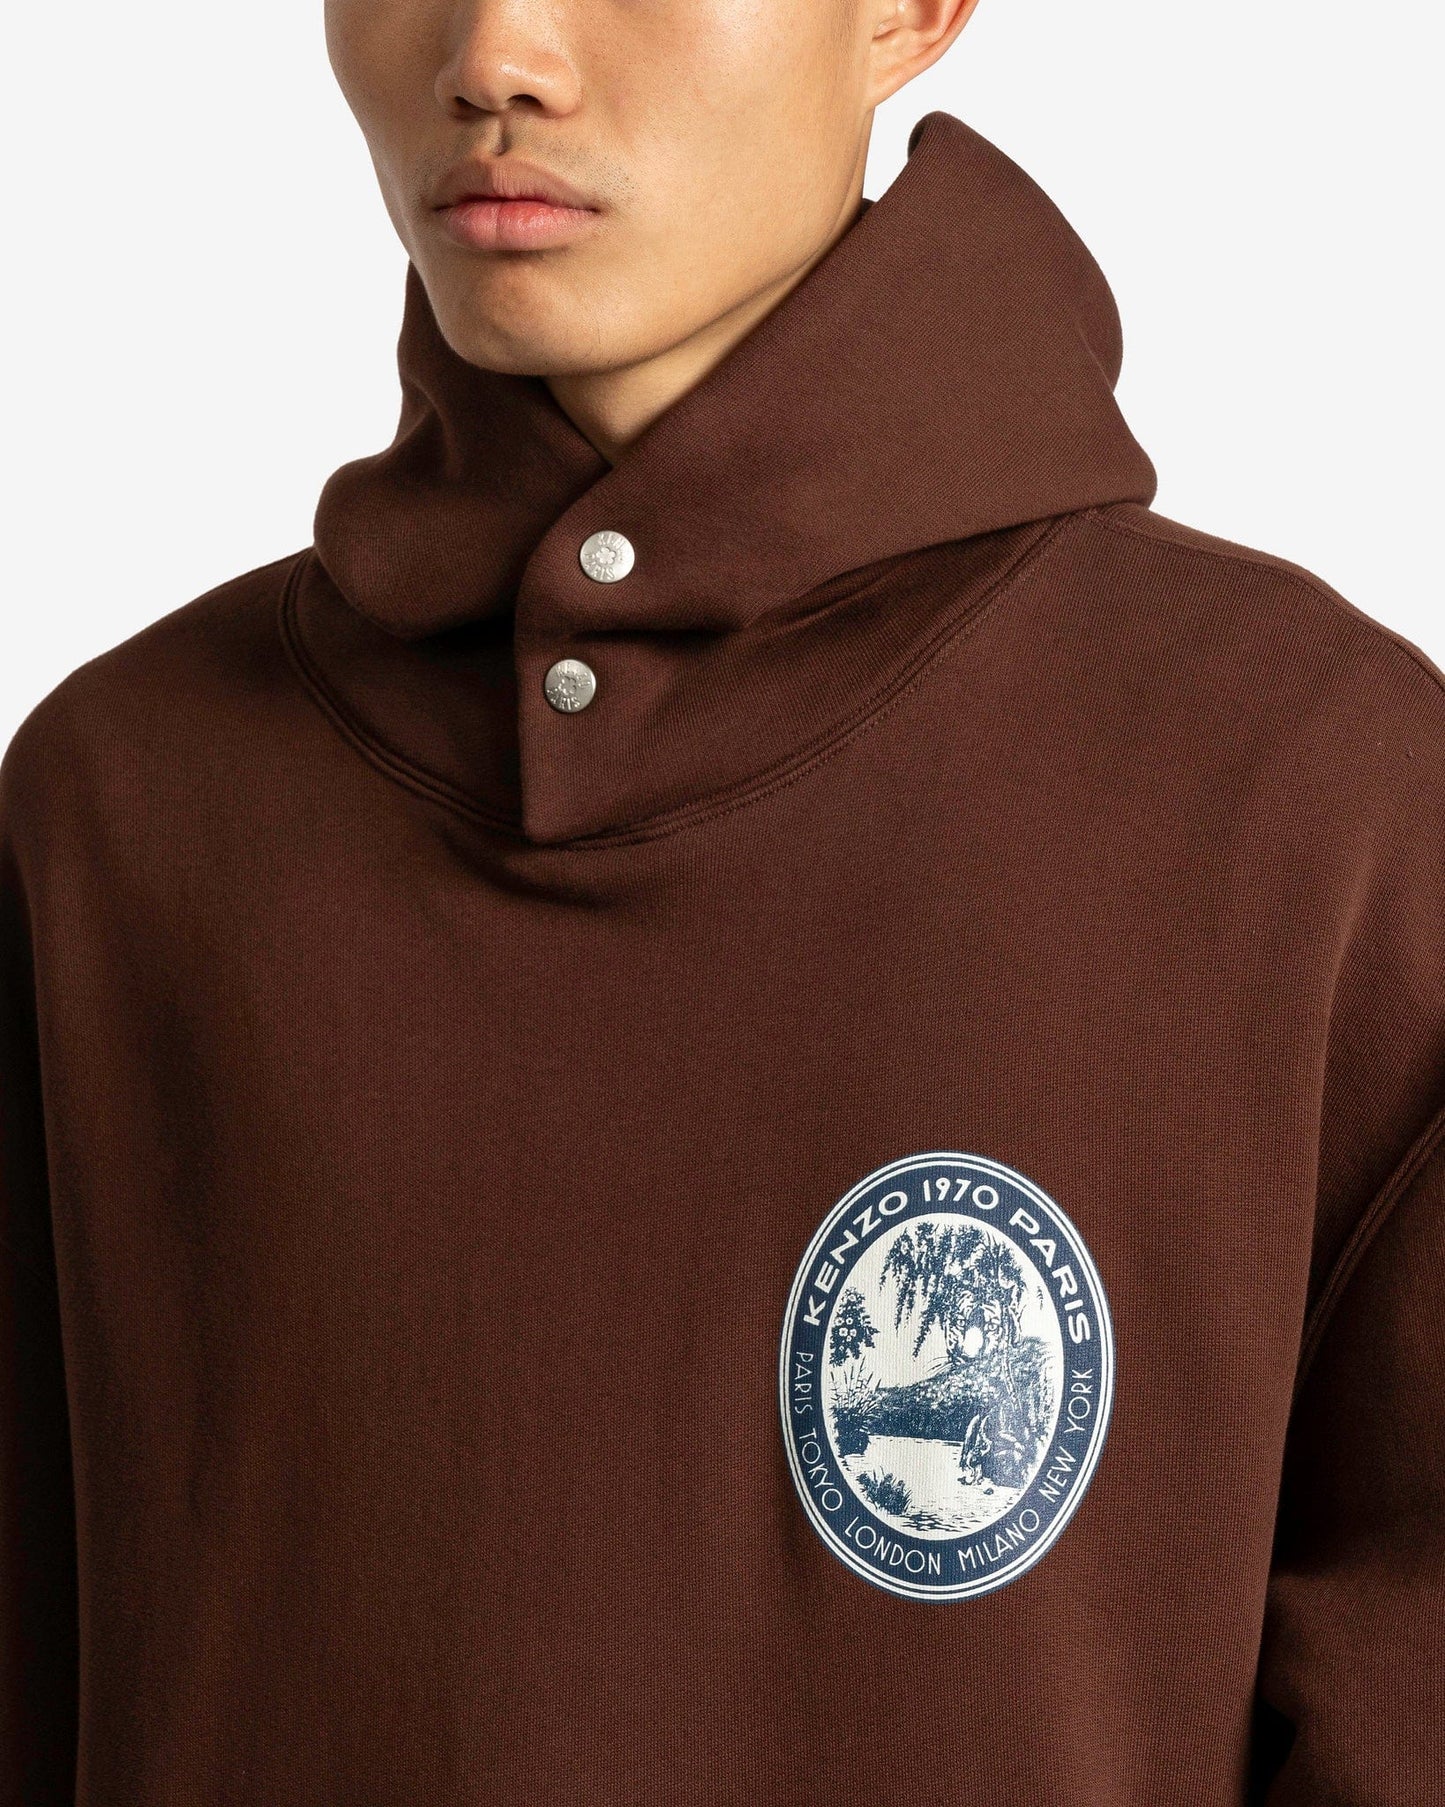 KENZO Men's Sweatshirts Tiger Patch Oversized Hoodie in Dark Brown